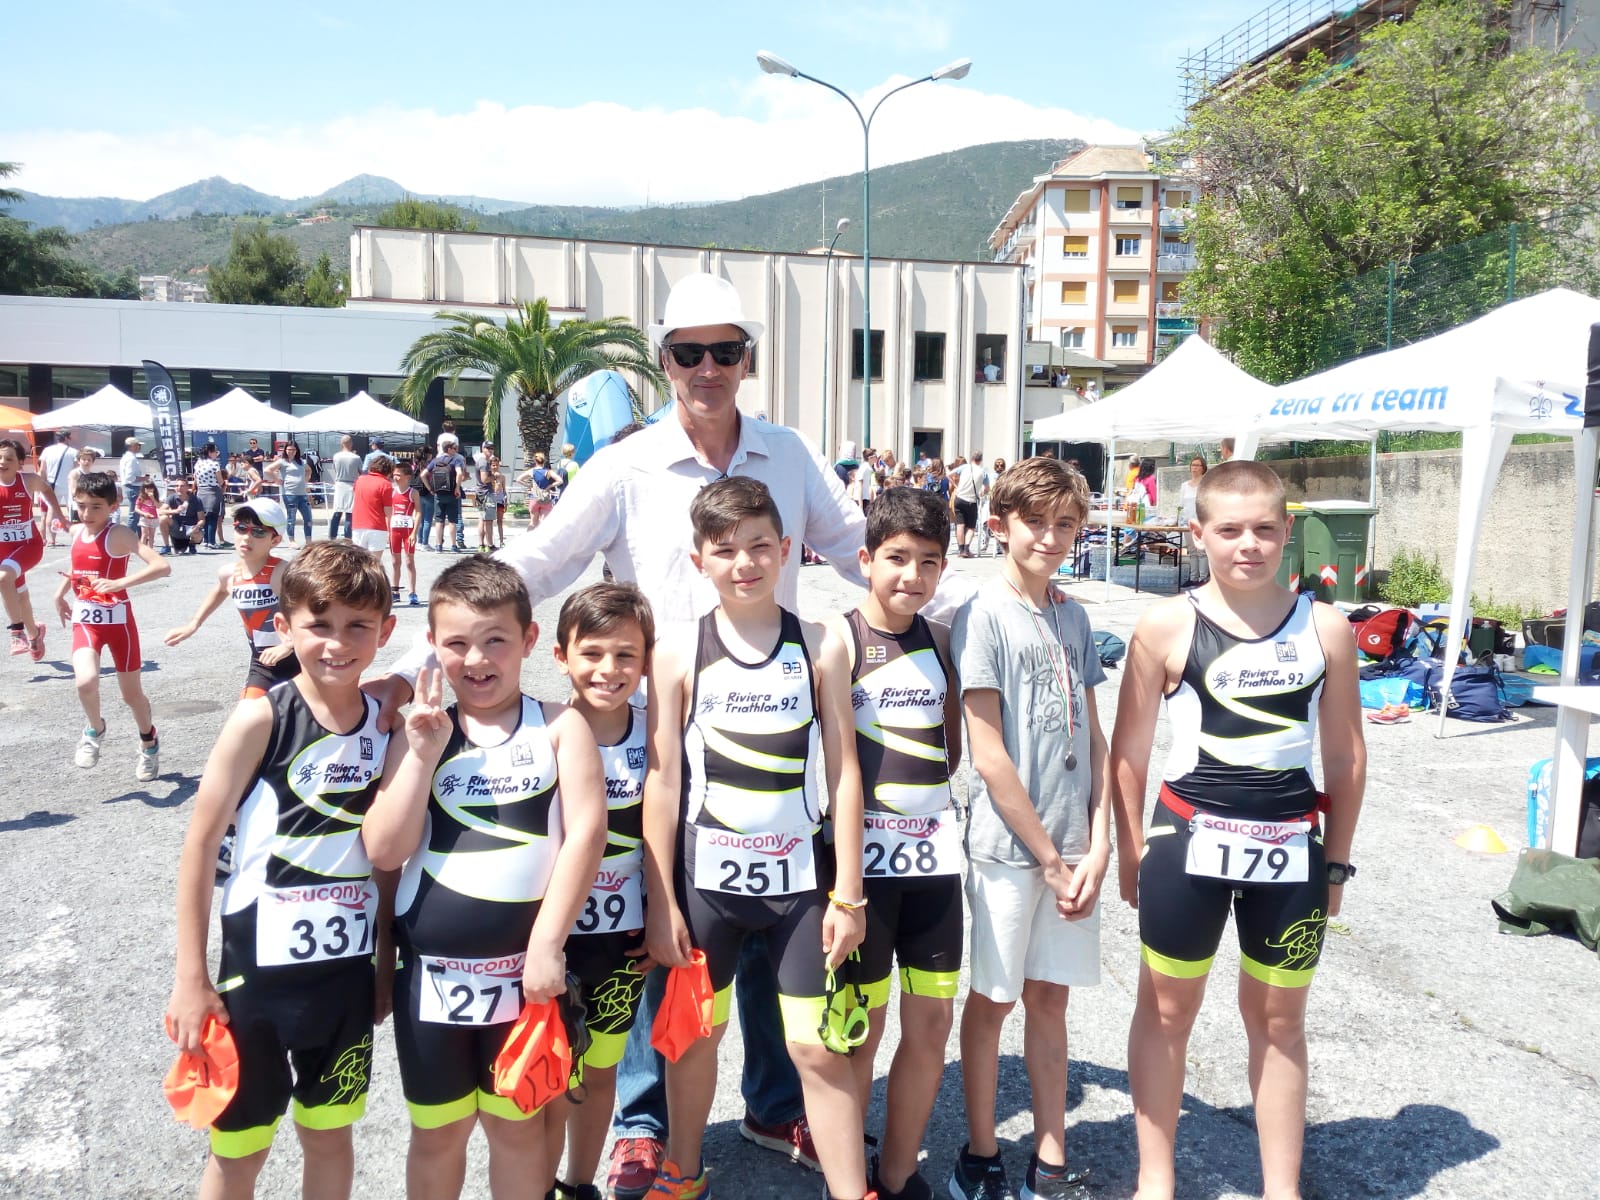 Carli 3° al DJ Tri. Tanti i giovani debuttanti ad Arenzano. 29° Polizzi ai Campionati Italiani di Triathlon Cross.